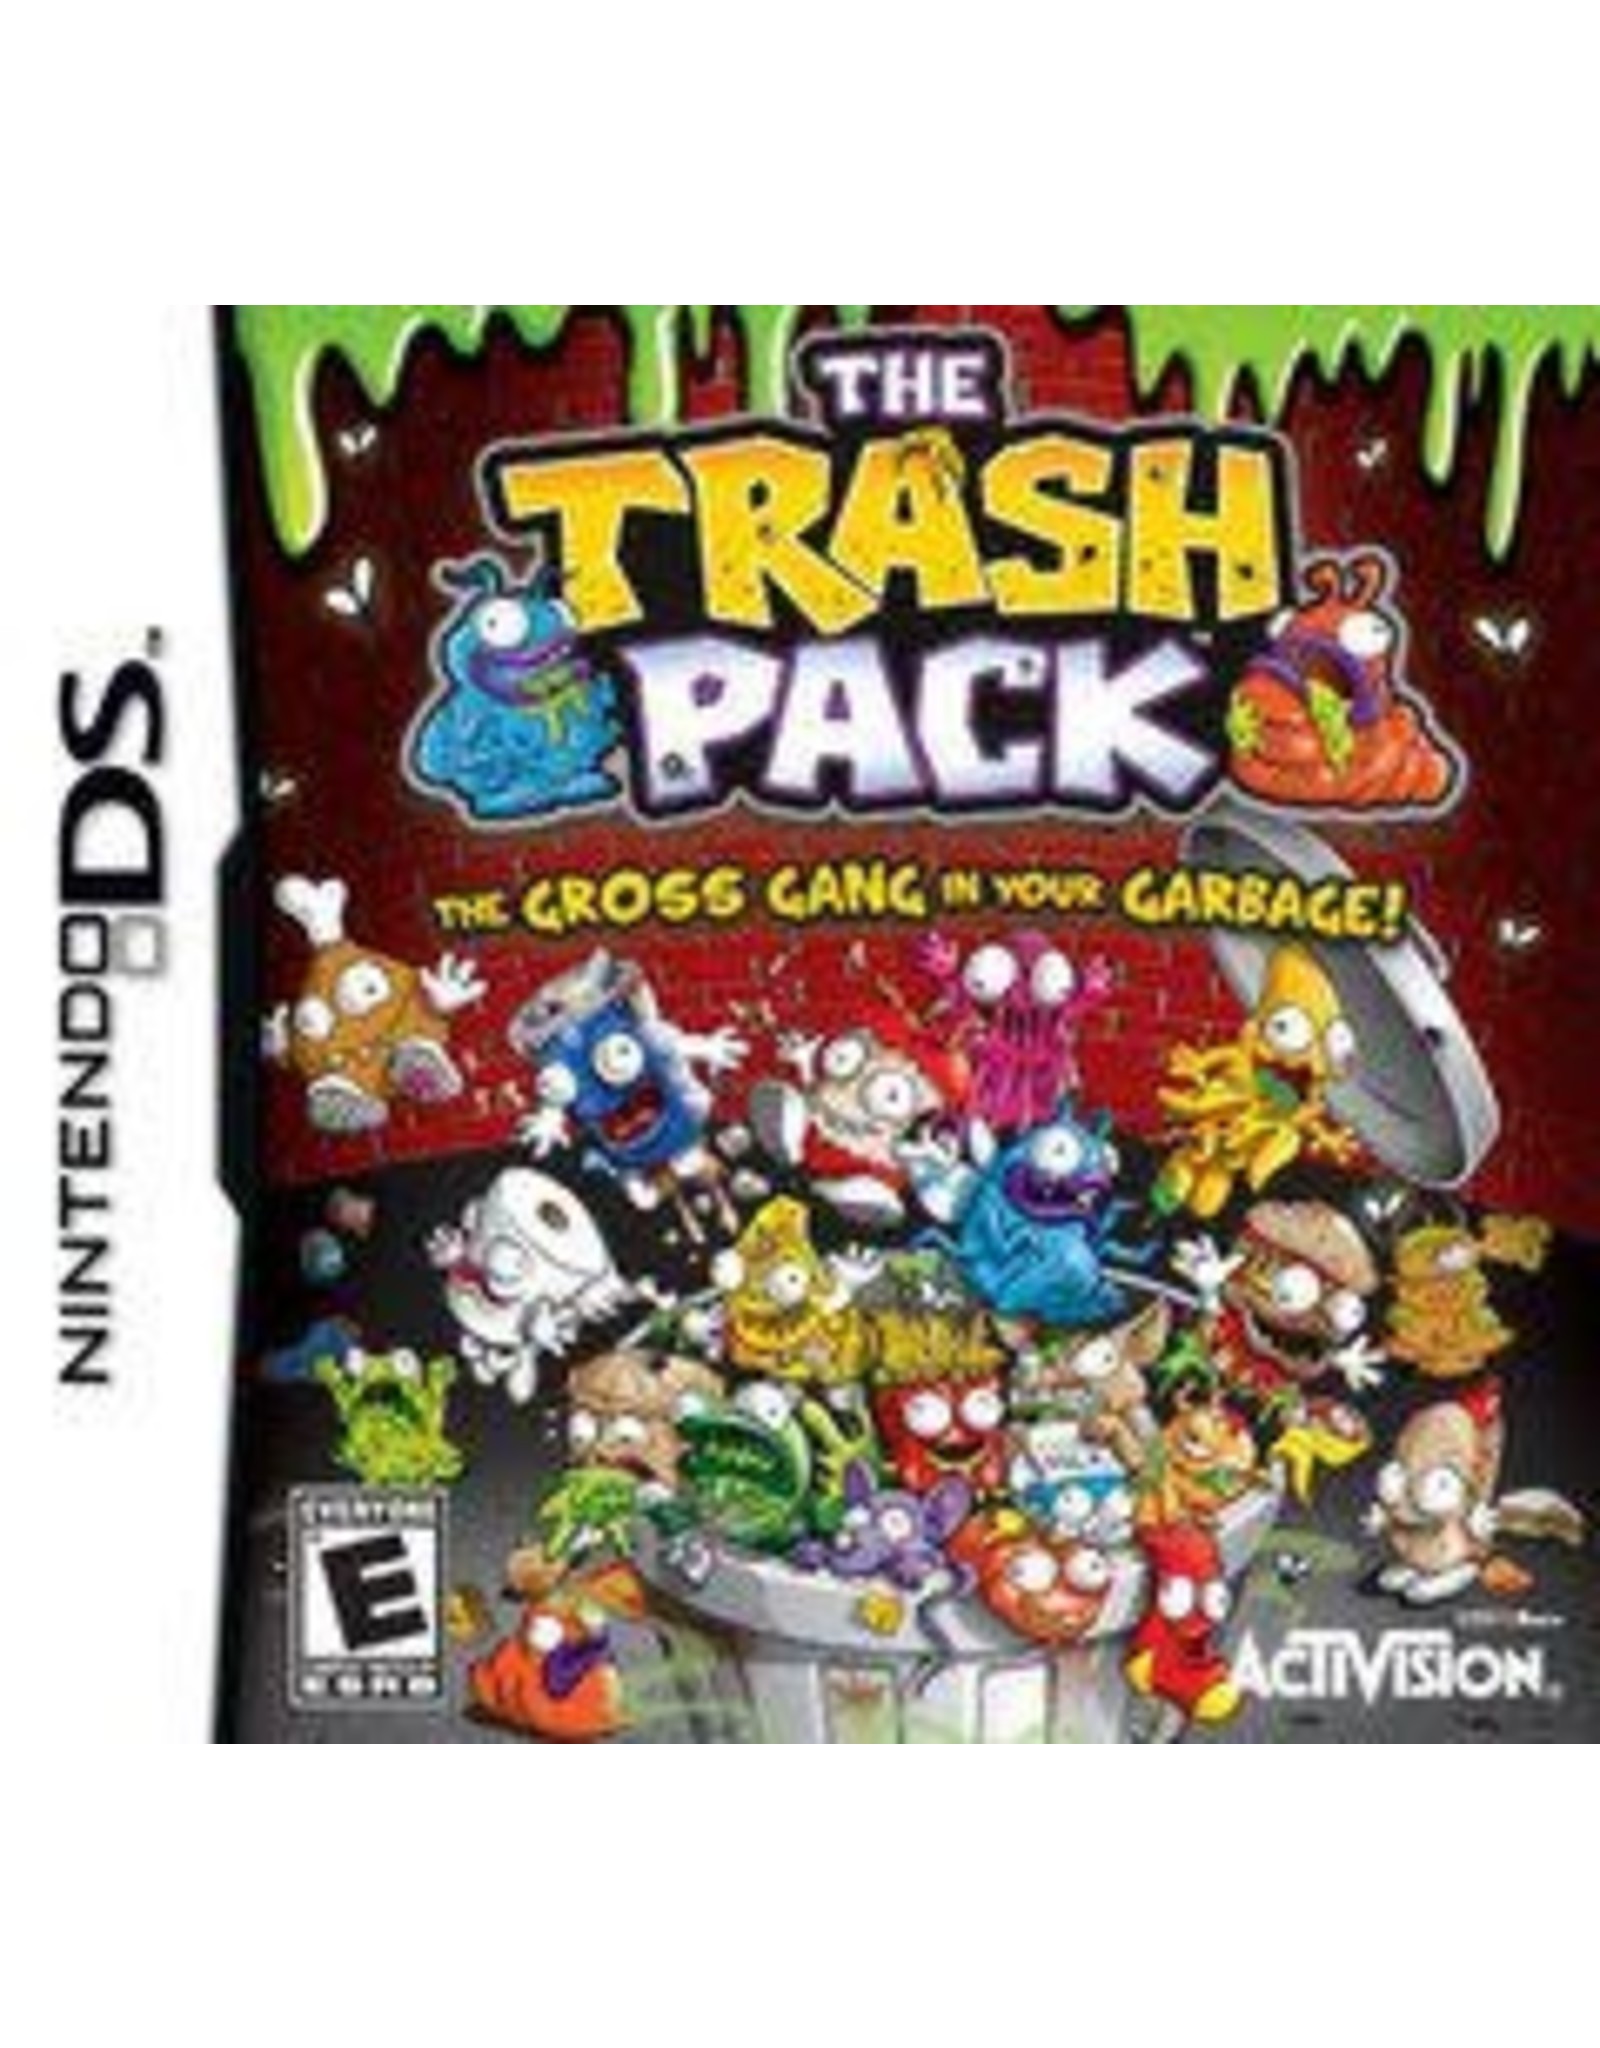 Nintendo DS Trash Pack (CiB)